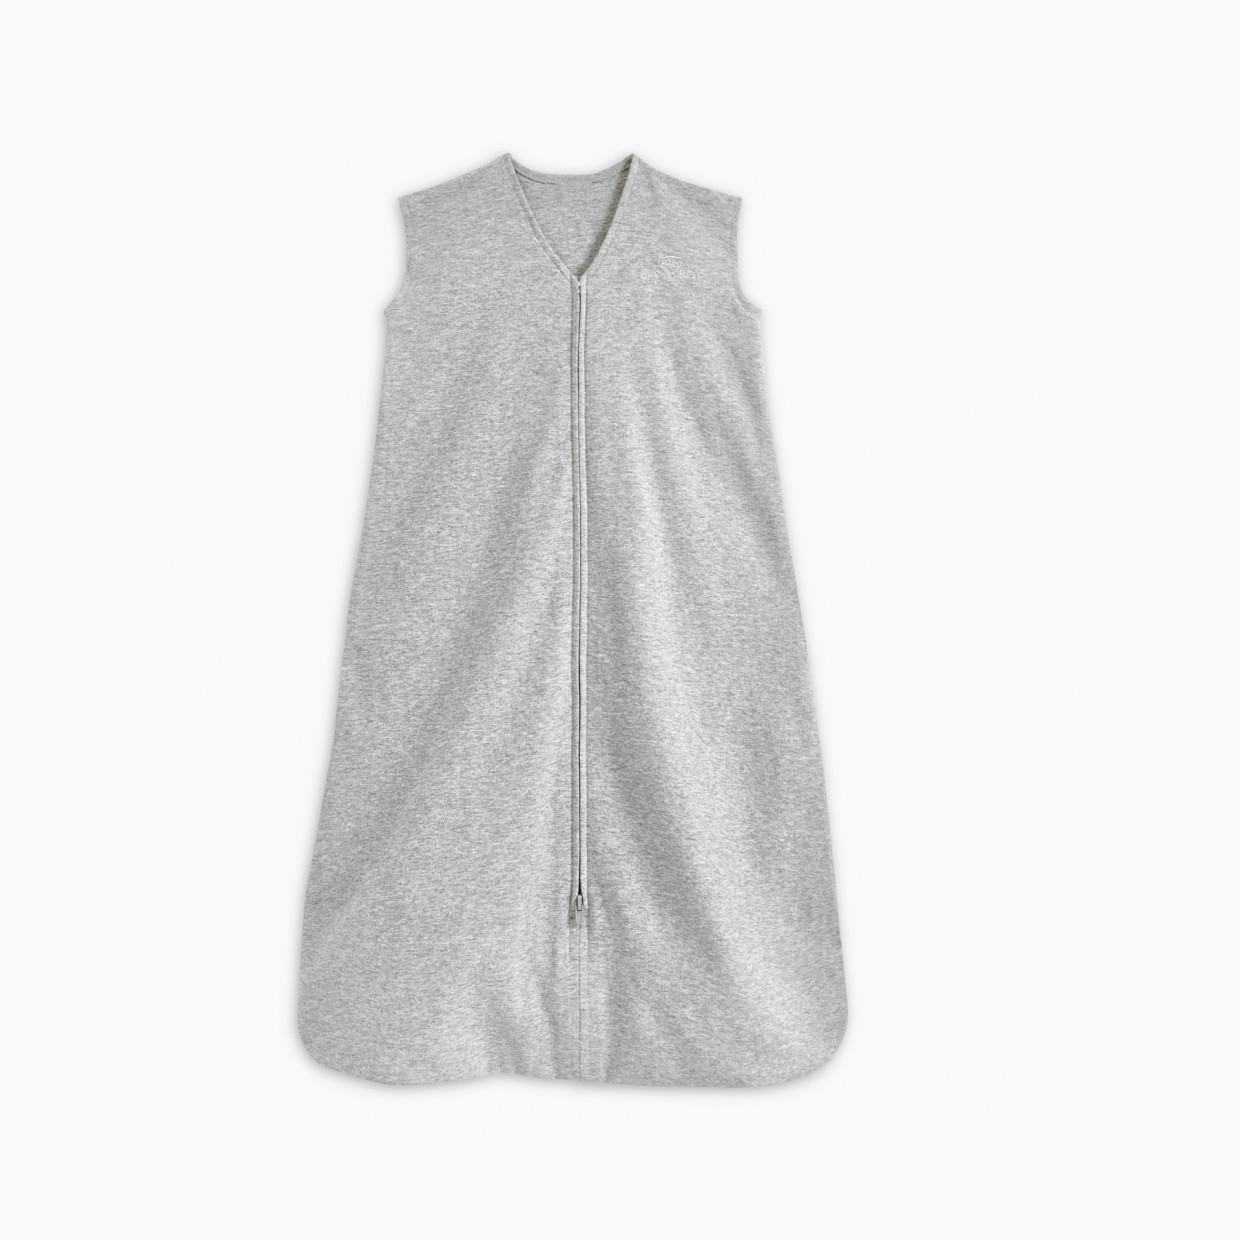 Halo SleepSack Wearable Blanket cotton - Heather Grey, Small.